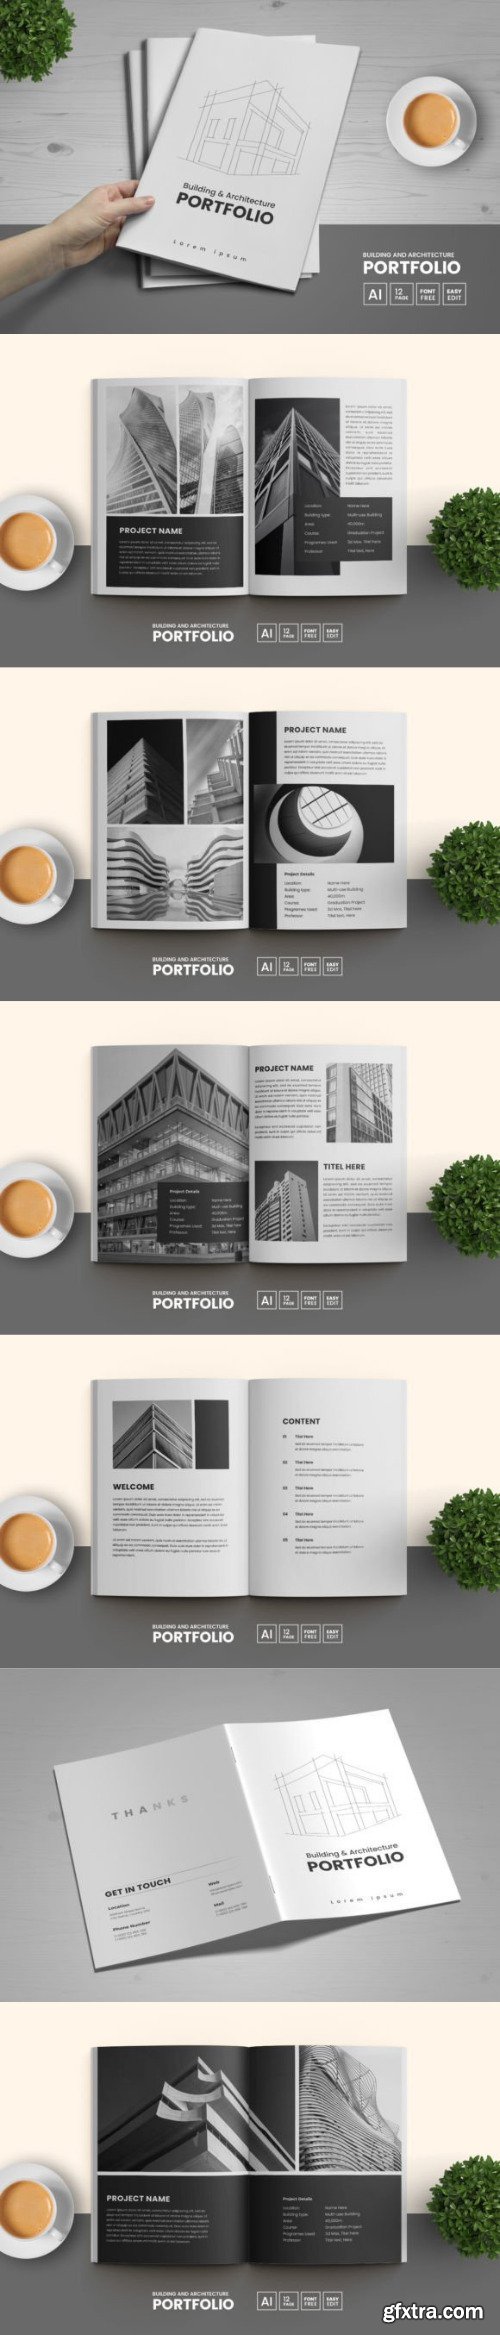 Creativemarket -  Architecture Portfolio Template